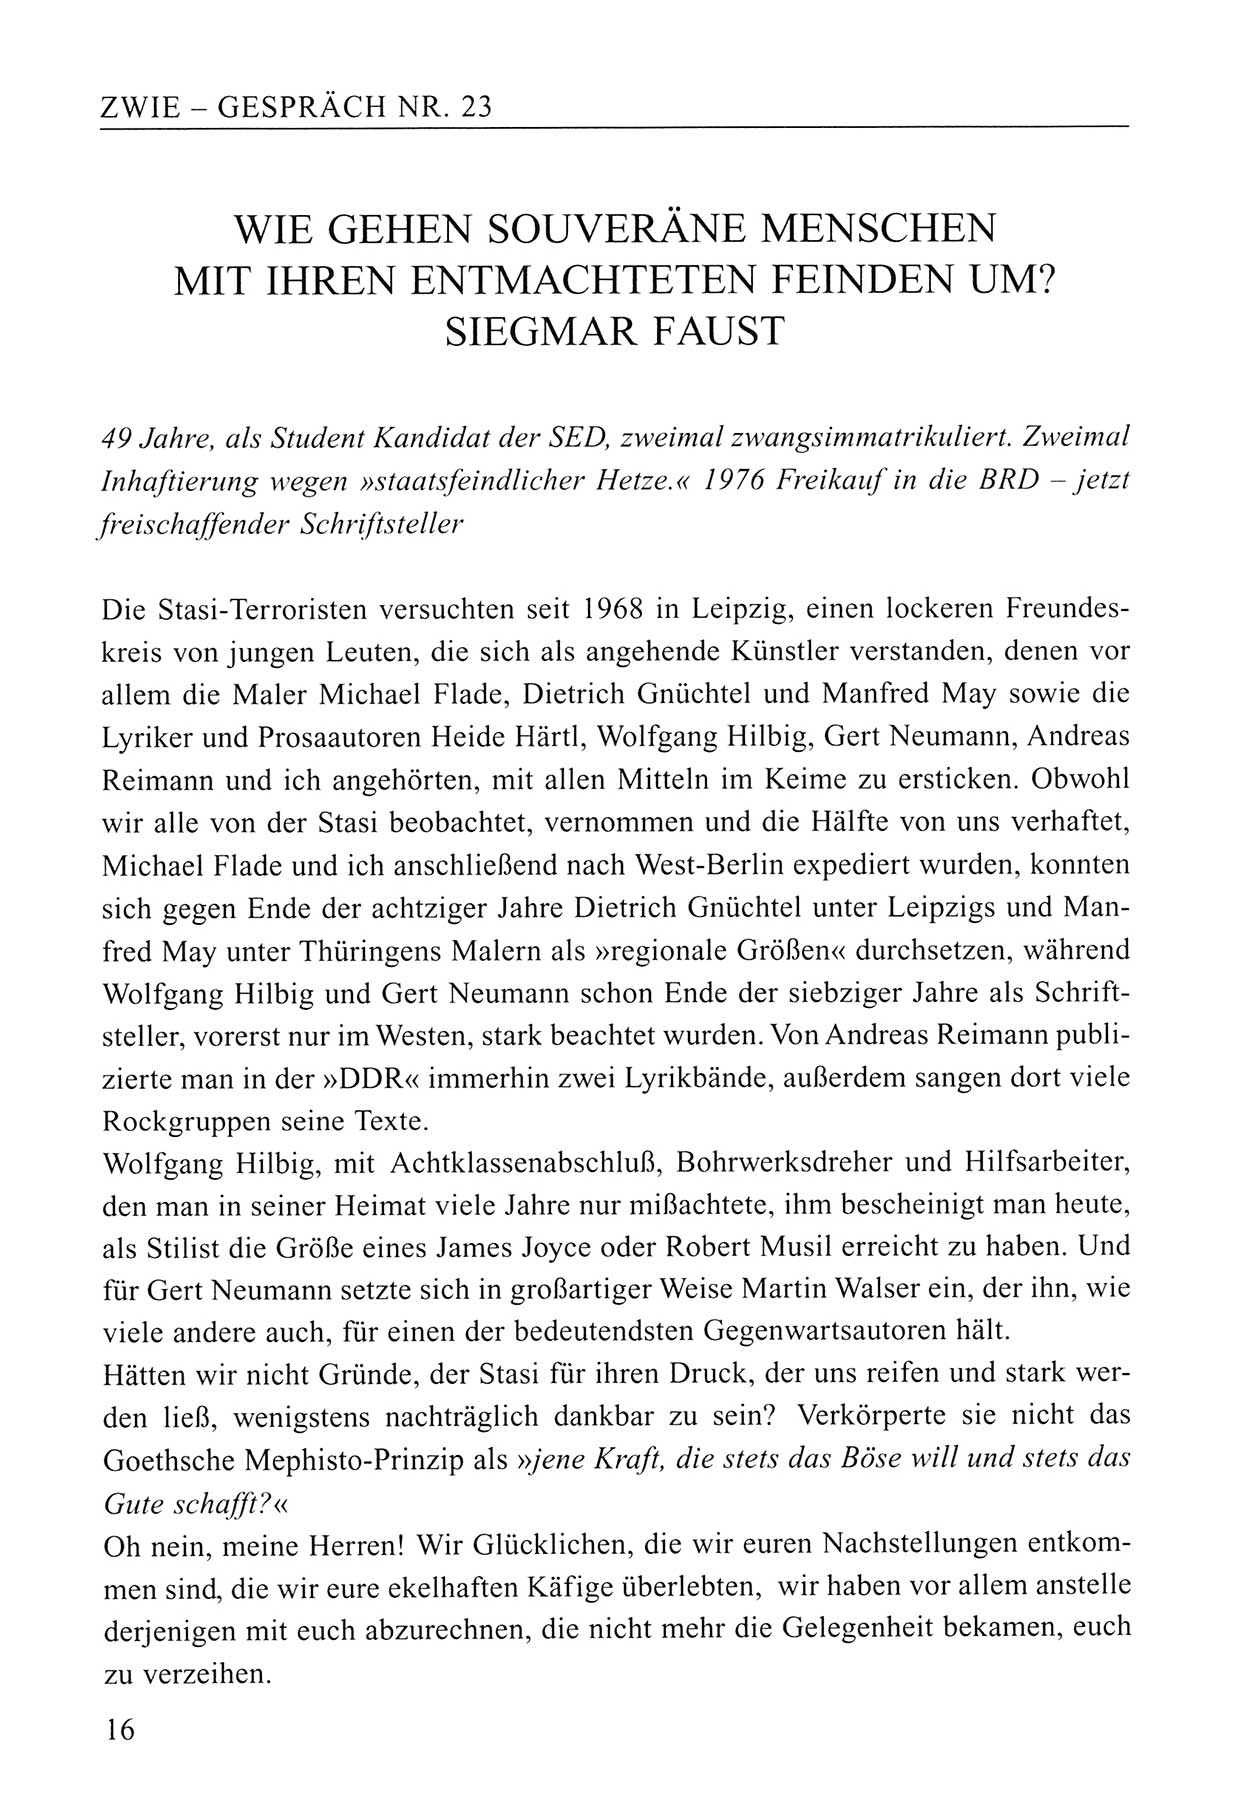 Zwie-Gespräch, Beiträge zum Umgang mit der Staatssicherheits-Vergangenheit [Deutsche Demokratische Republik (DDR)], Ausgabe Nr. 23, Berlin 1994, Seite 16 (Zwie-Gespr. Ausg. 23 1994, S. 16)